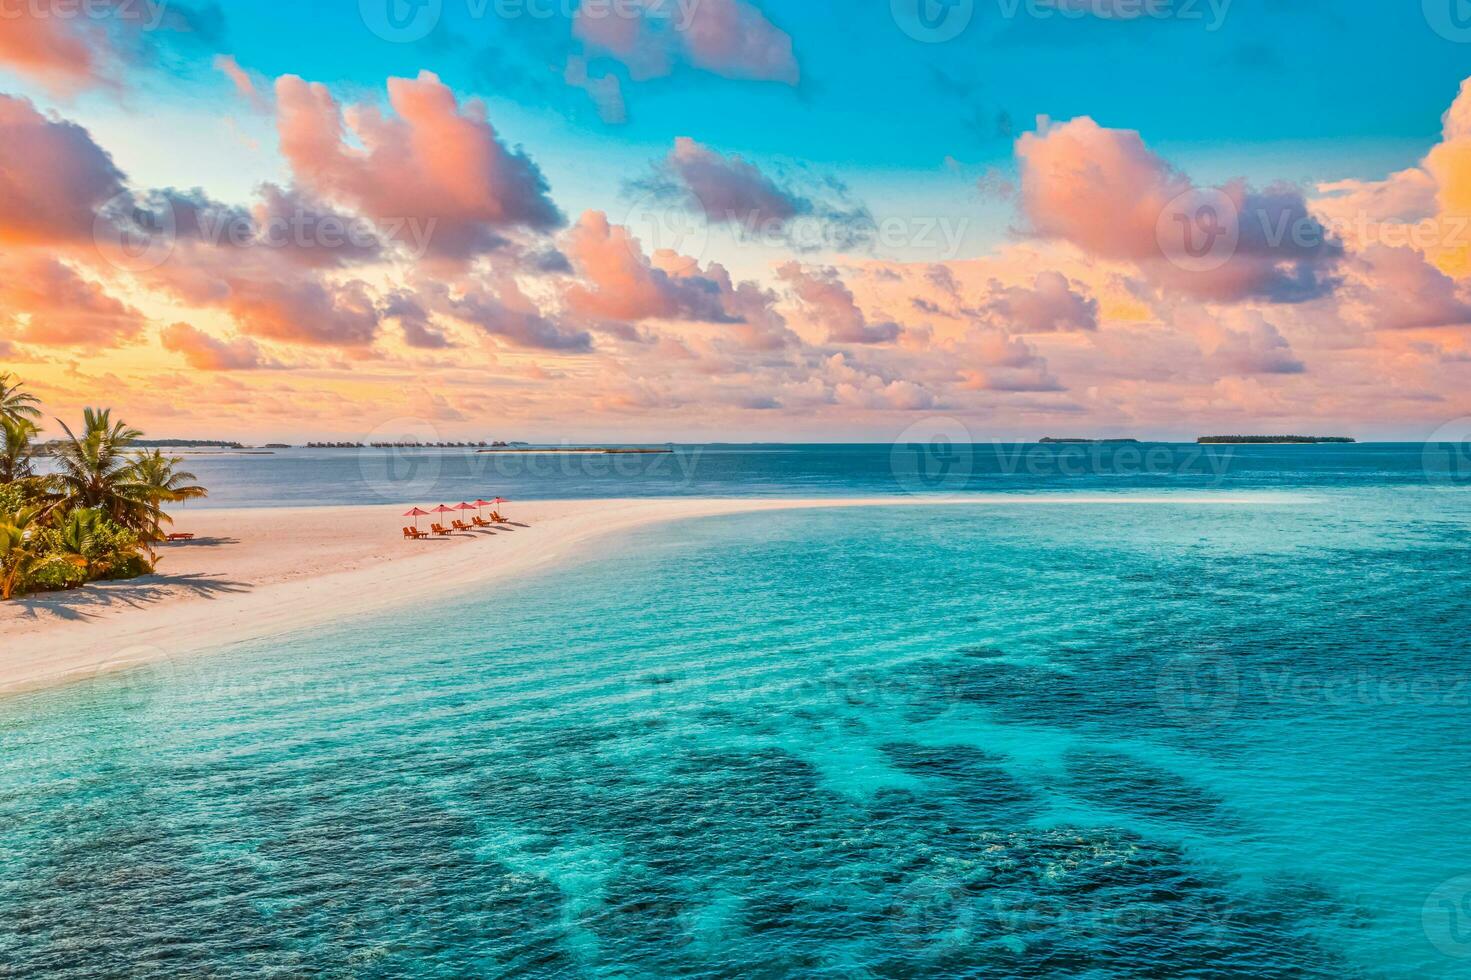 luftaufnahme des herrlichen strandes, paar sonnenschirme, stühle, betten in der nähe der seelagune. fantastische himmelwolken sommerstrandlandschaft. idyllische natur für inspirierenden tourismusurlaub, romantischen urlaub auf den malediven foto